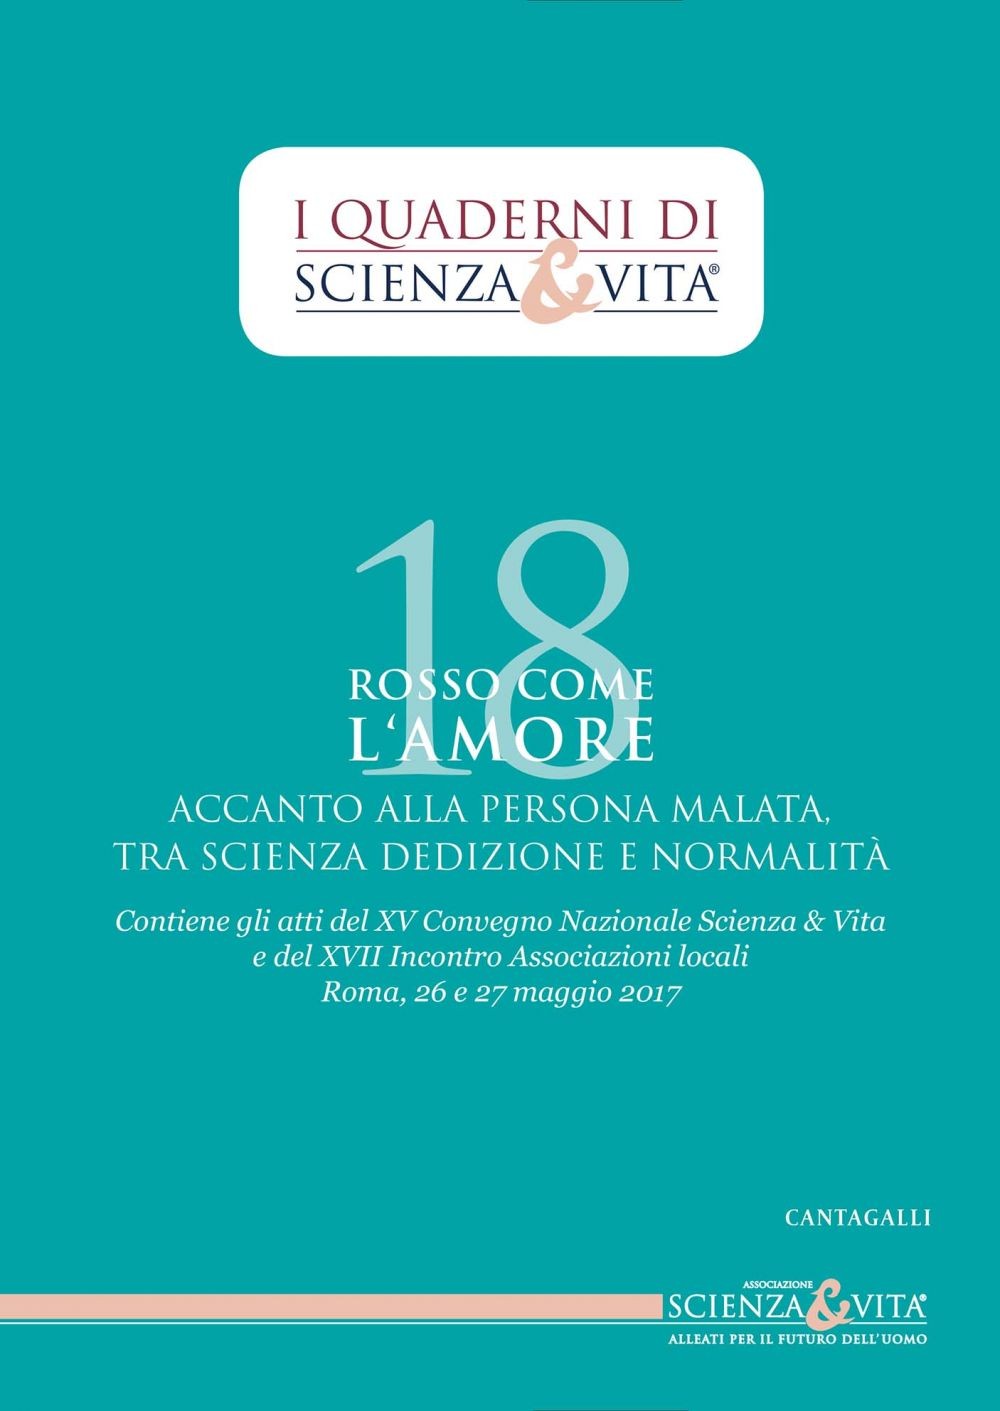 I Quaderni di Scienza & Vita 18 - Librerie.coop